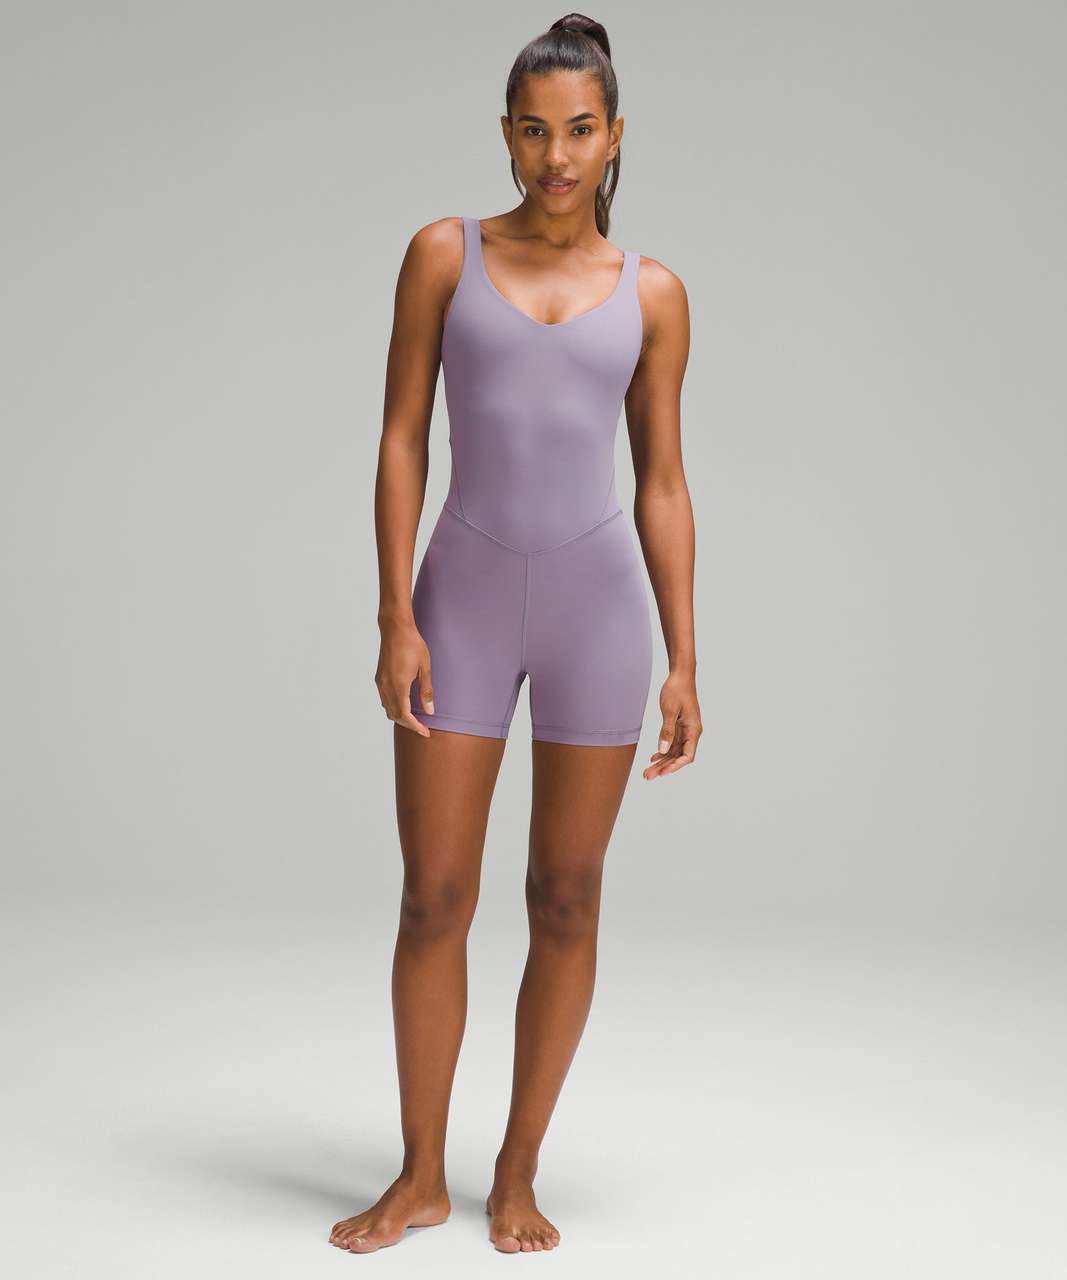 Lululemon Align™ Bodysuit, Women's Dresses